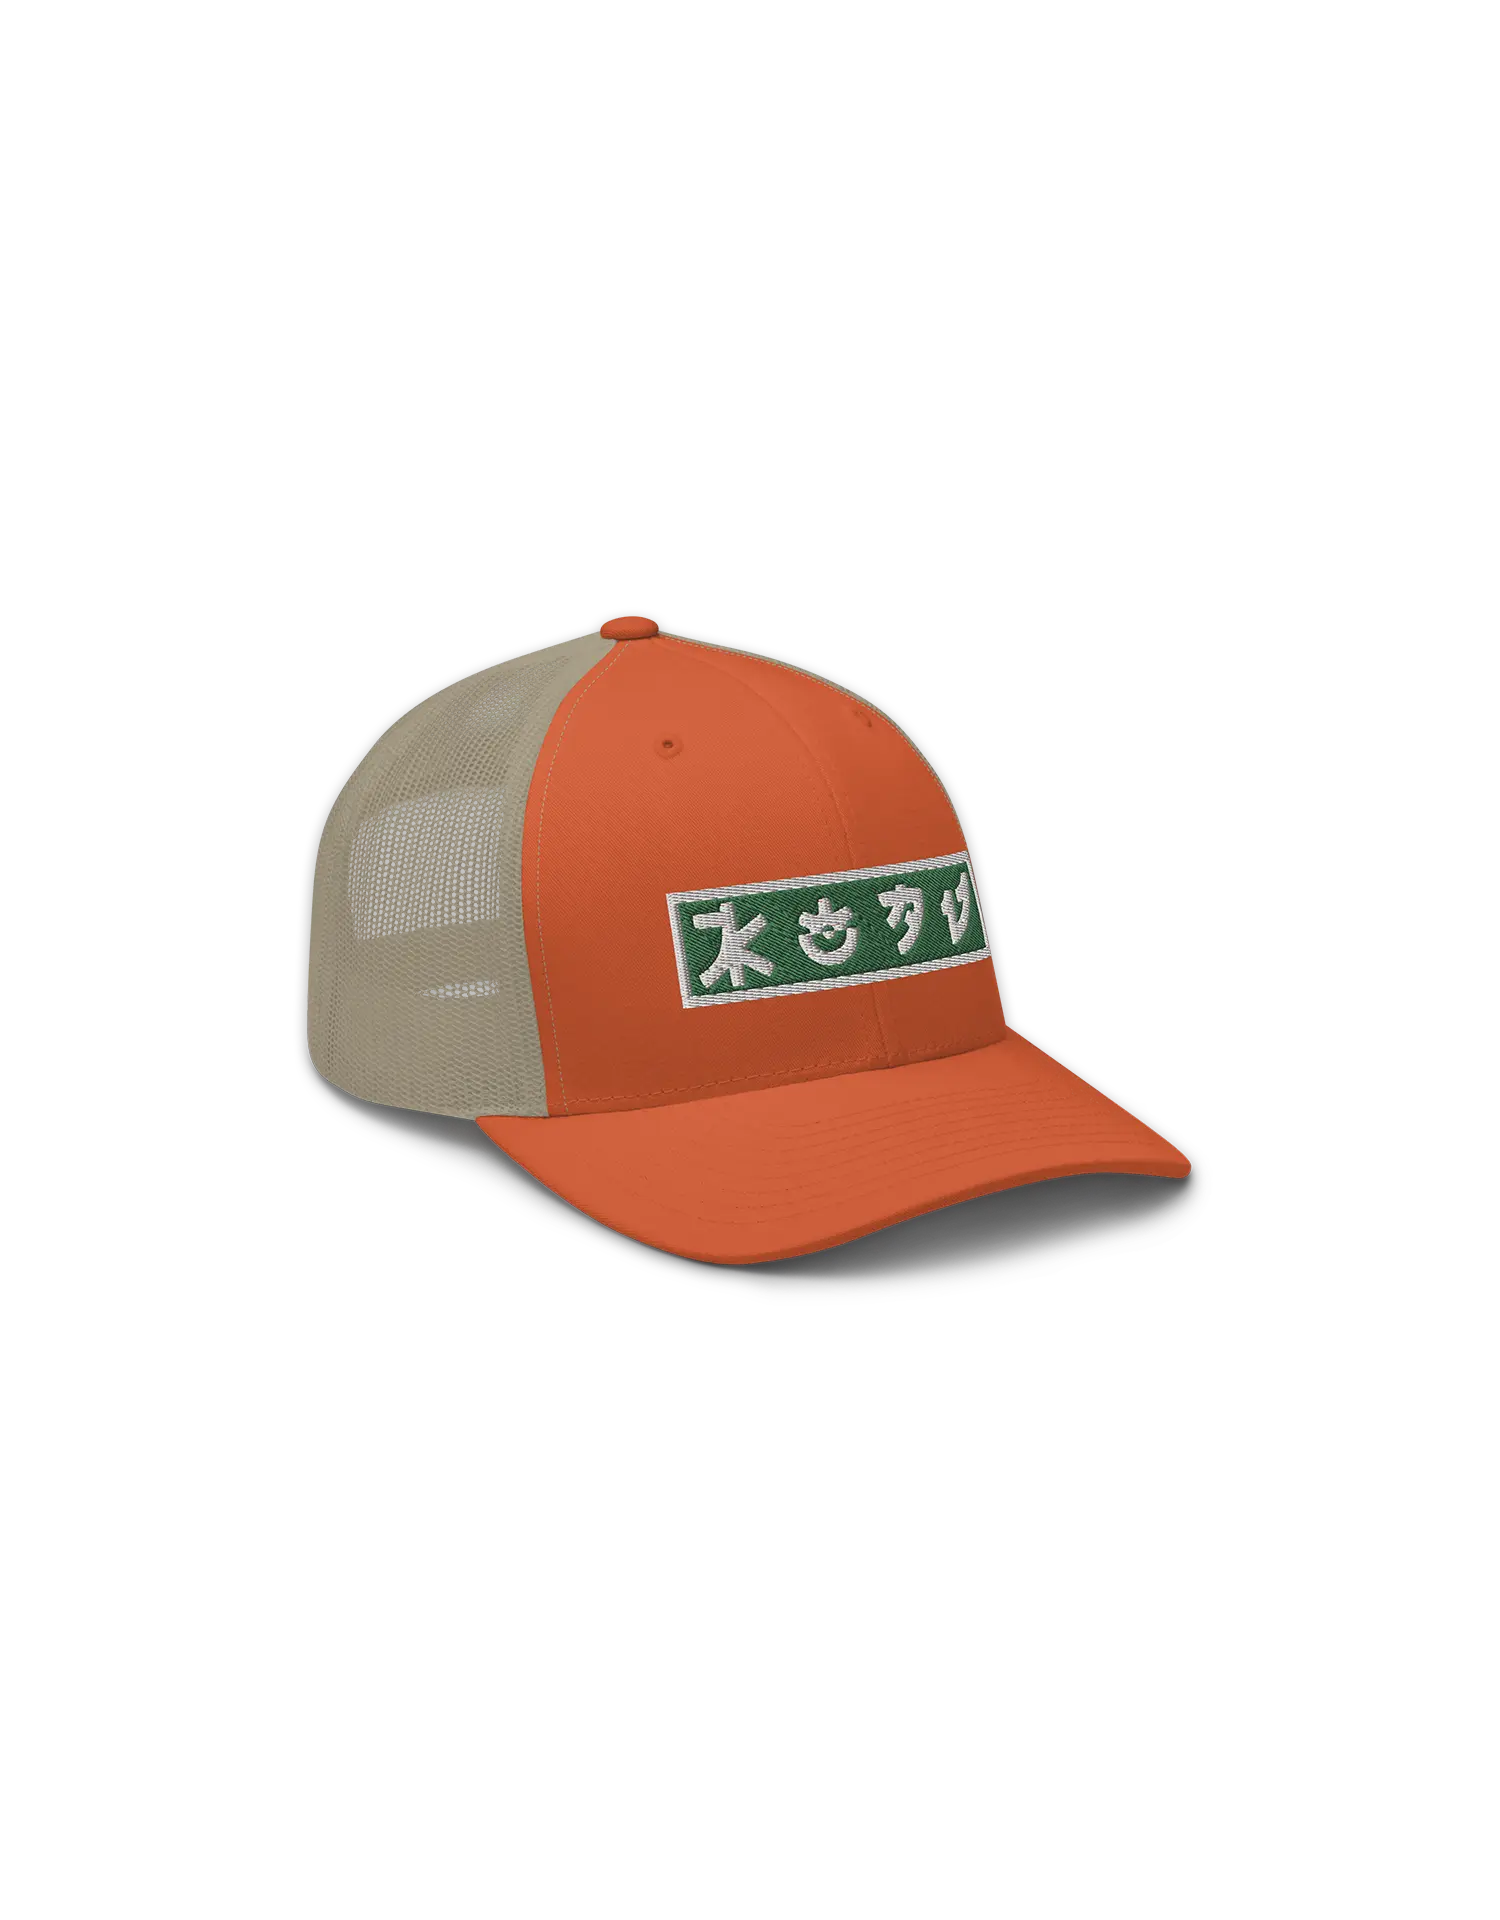 Green and White KOAV Retro Badge on a Rustic Orange Trucker Cap by KOAV